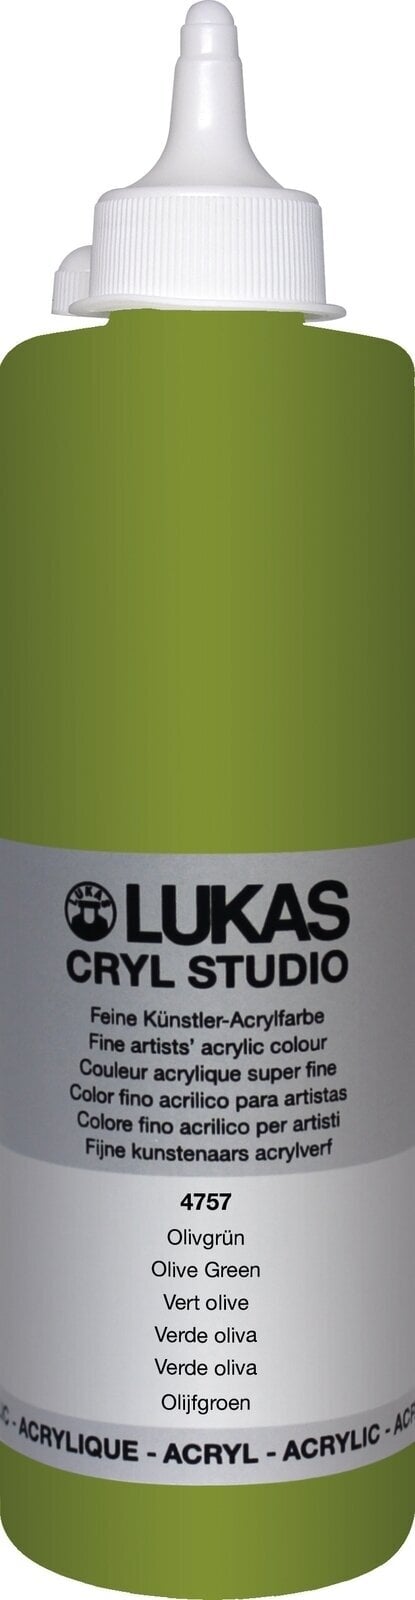 Pintura acrílica Lukas Cryl Studio Acrylic Paint 500 ml Olive Green Pintura acrílica